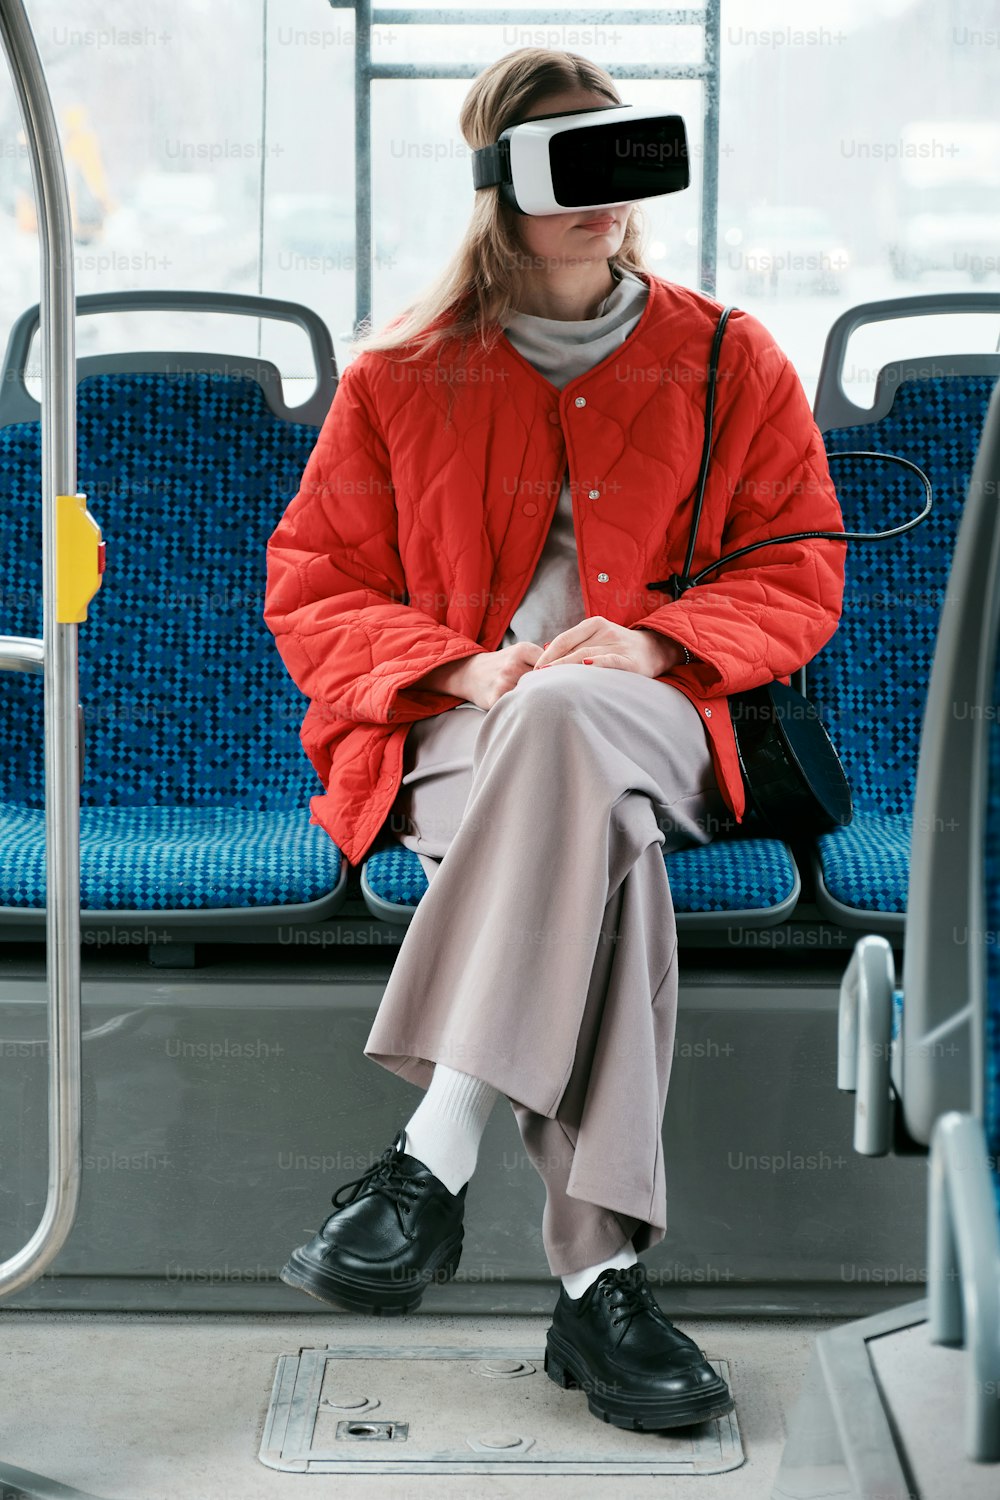 Une femme assise dans un bus portant une veste rouge